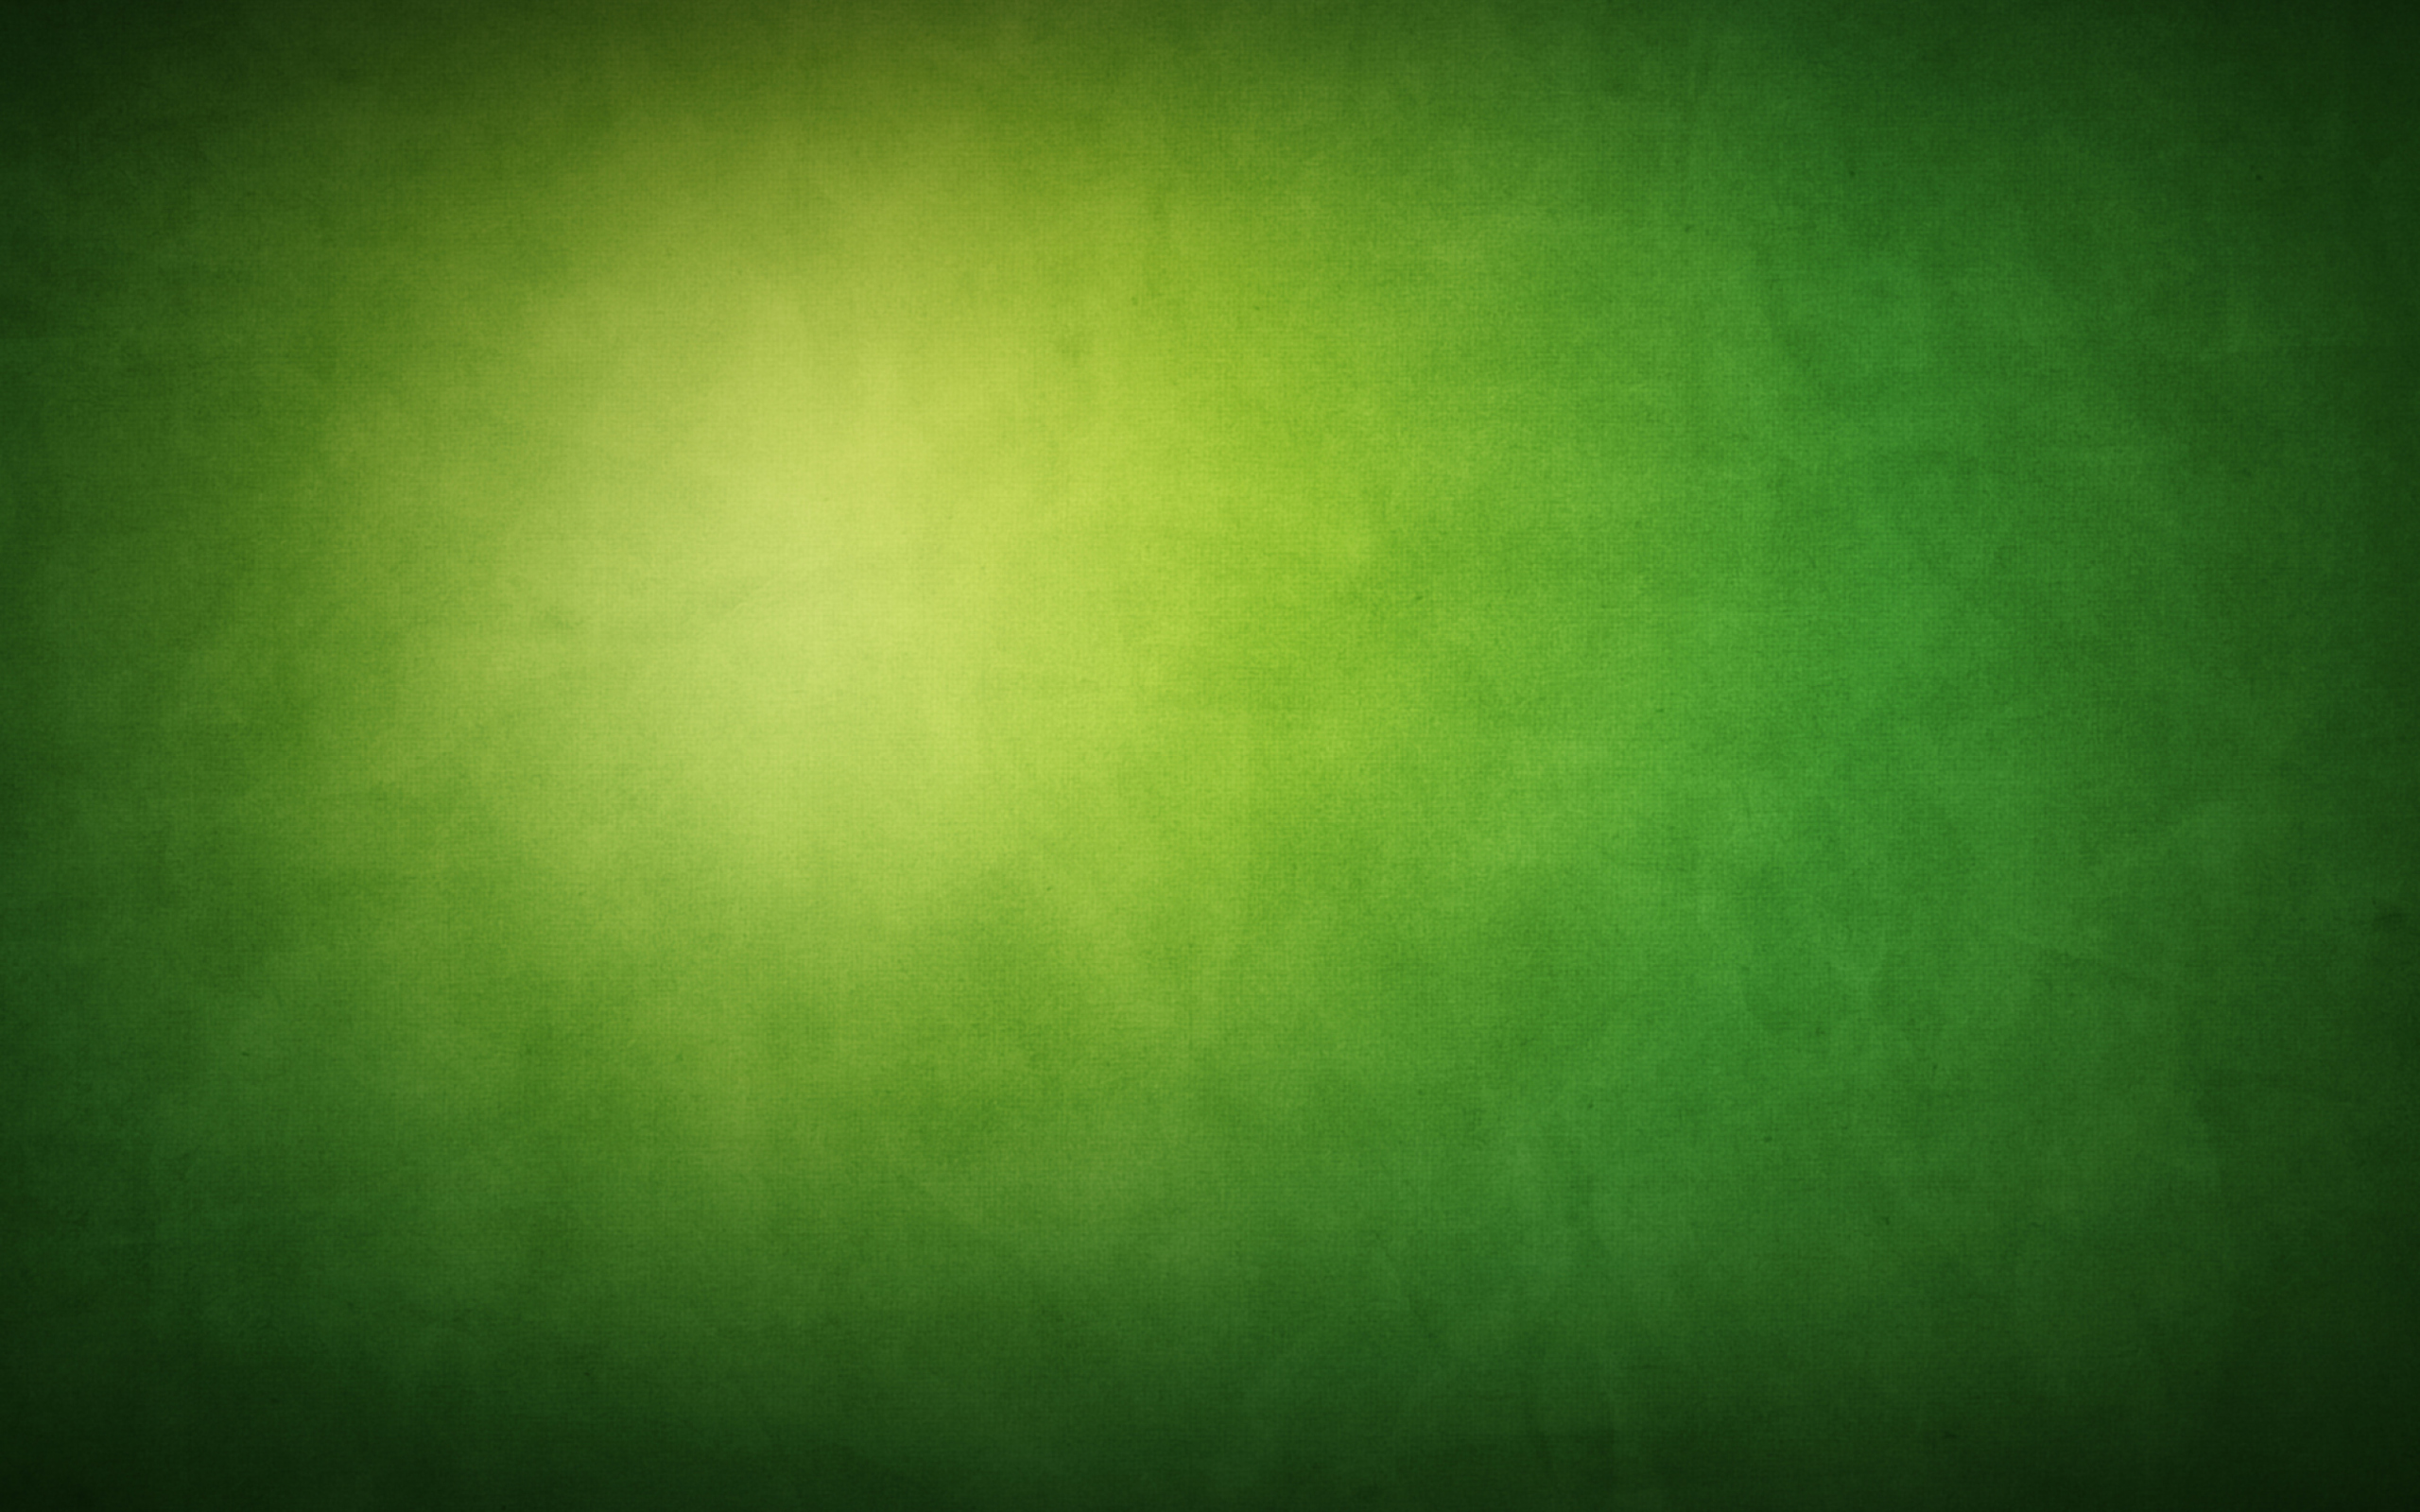 Das Green Blur Wallpaper 2560x1600